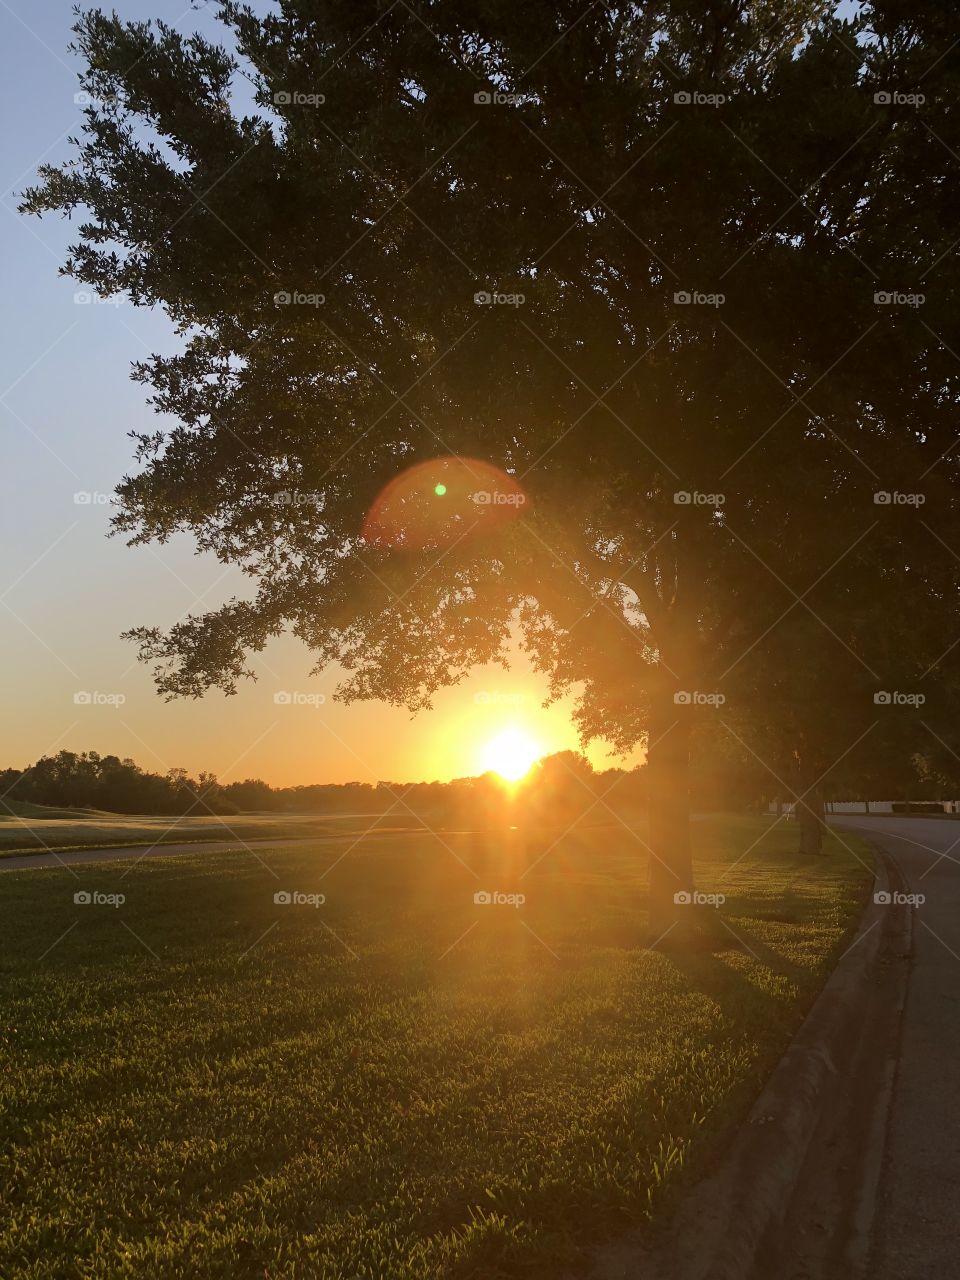 Sunrise on golf course 